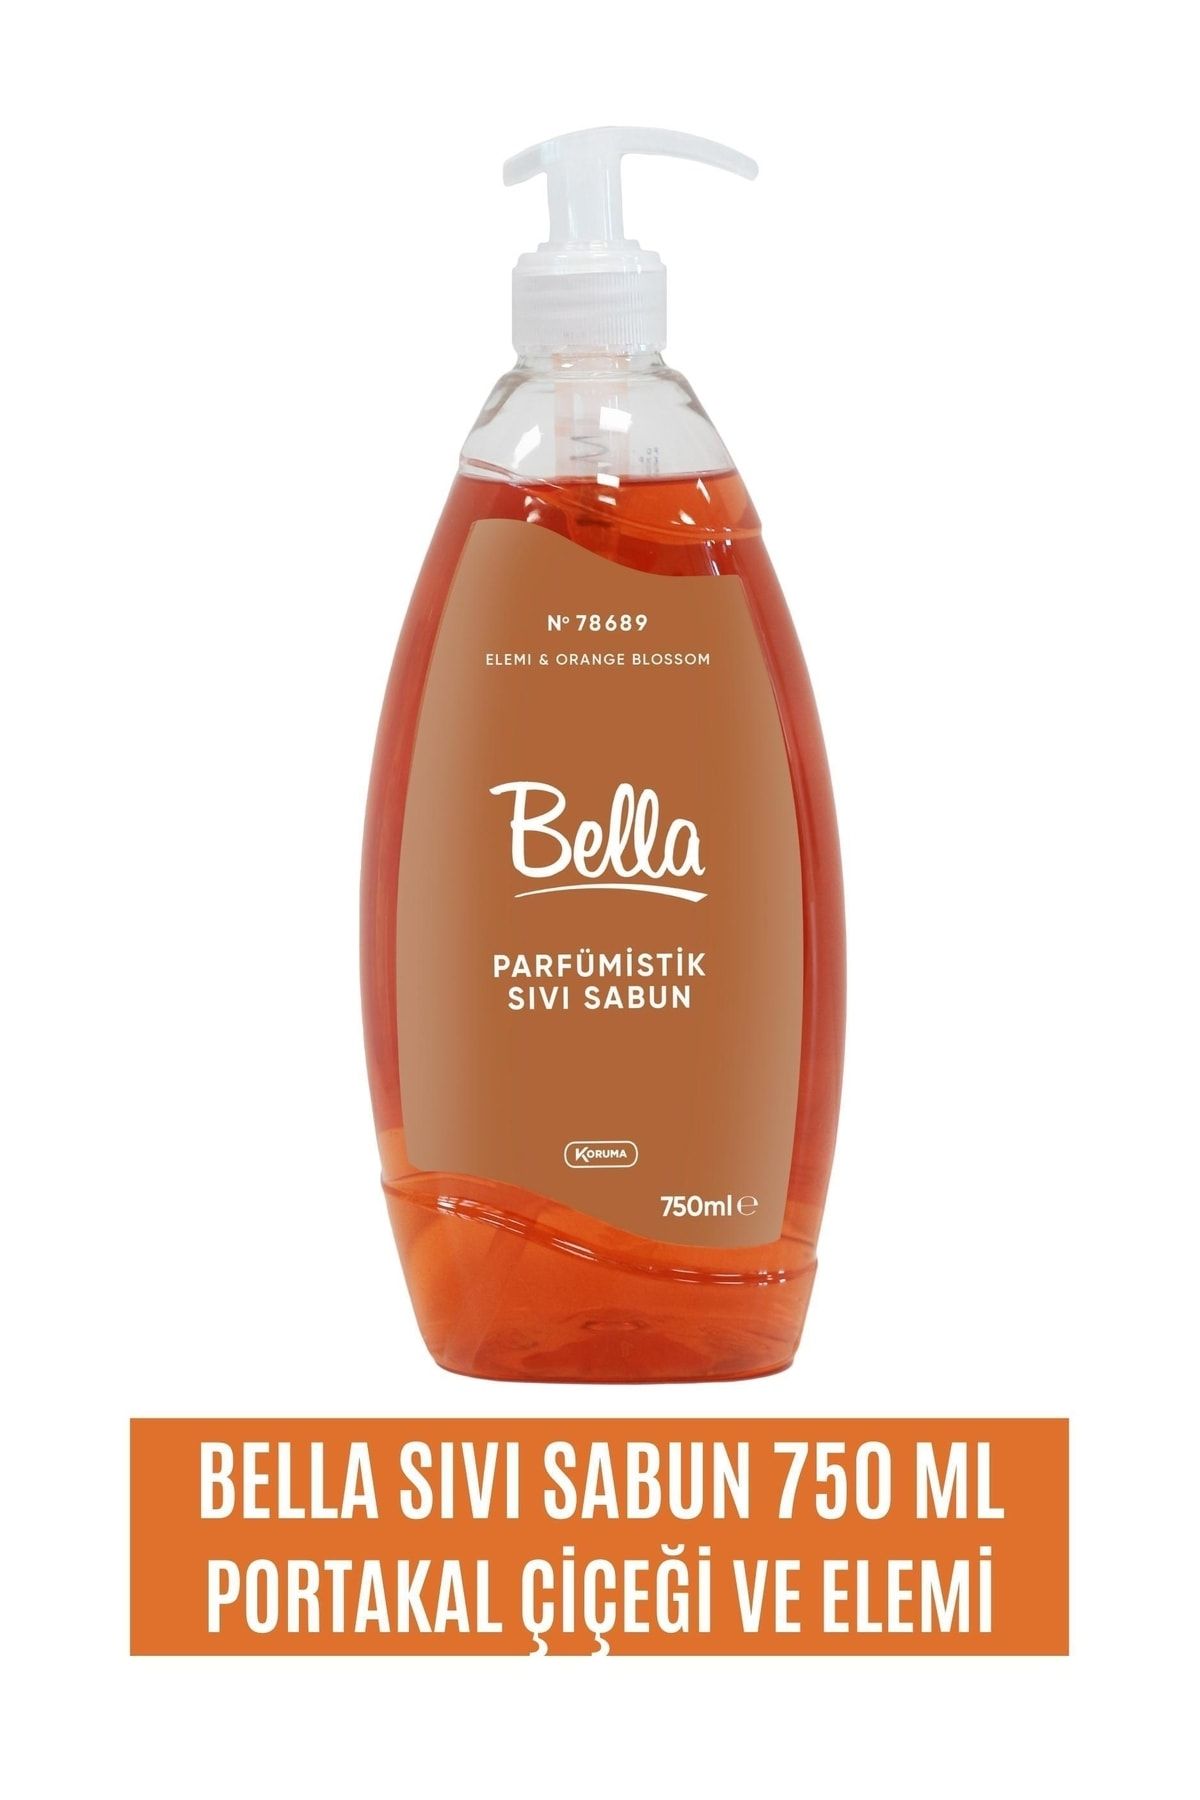 Bella Sıvı El Sabunu 750 Ml - Portakal Çiçeği Ve Elemi